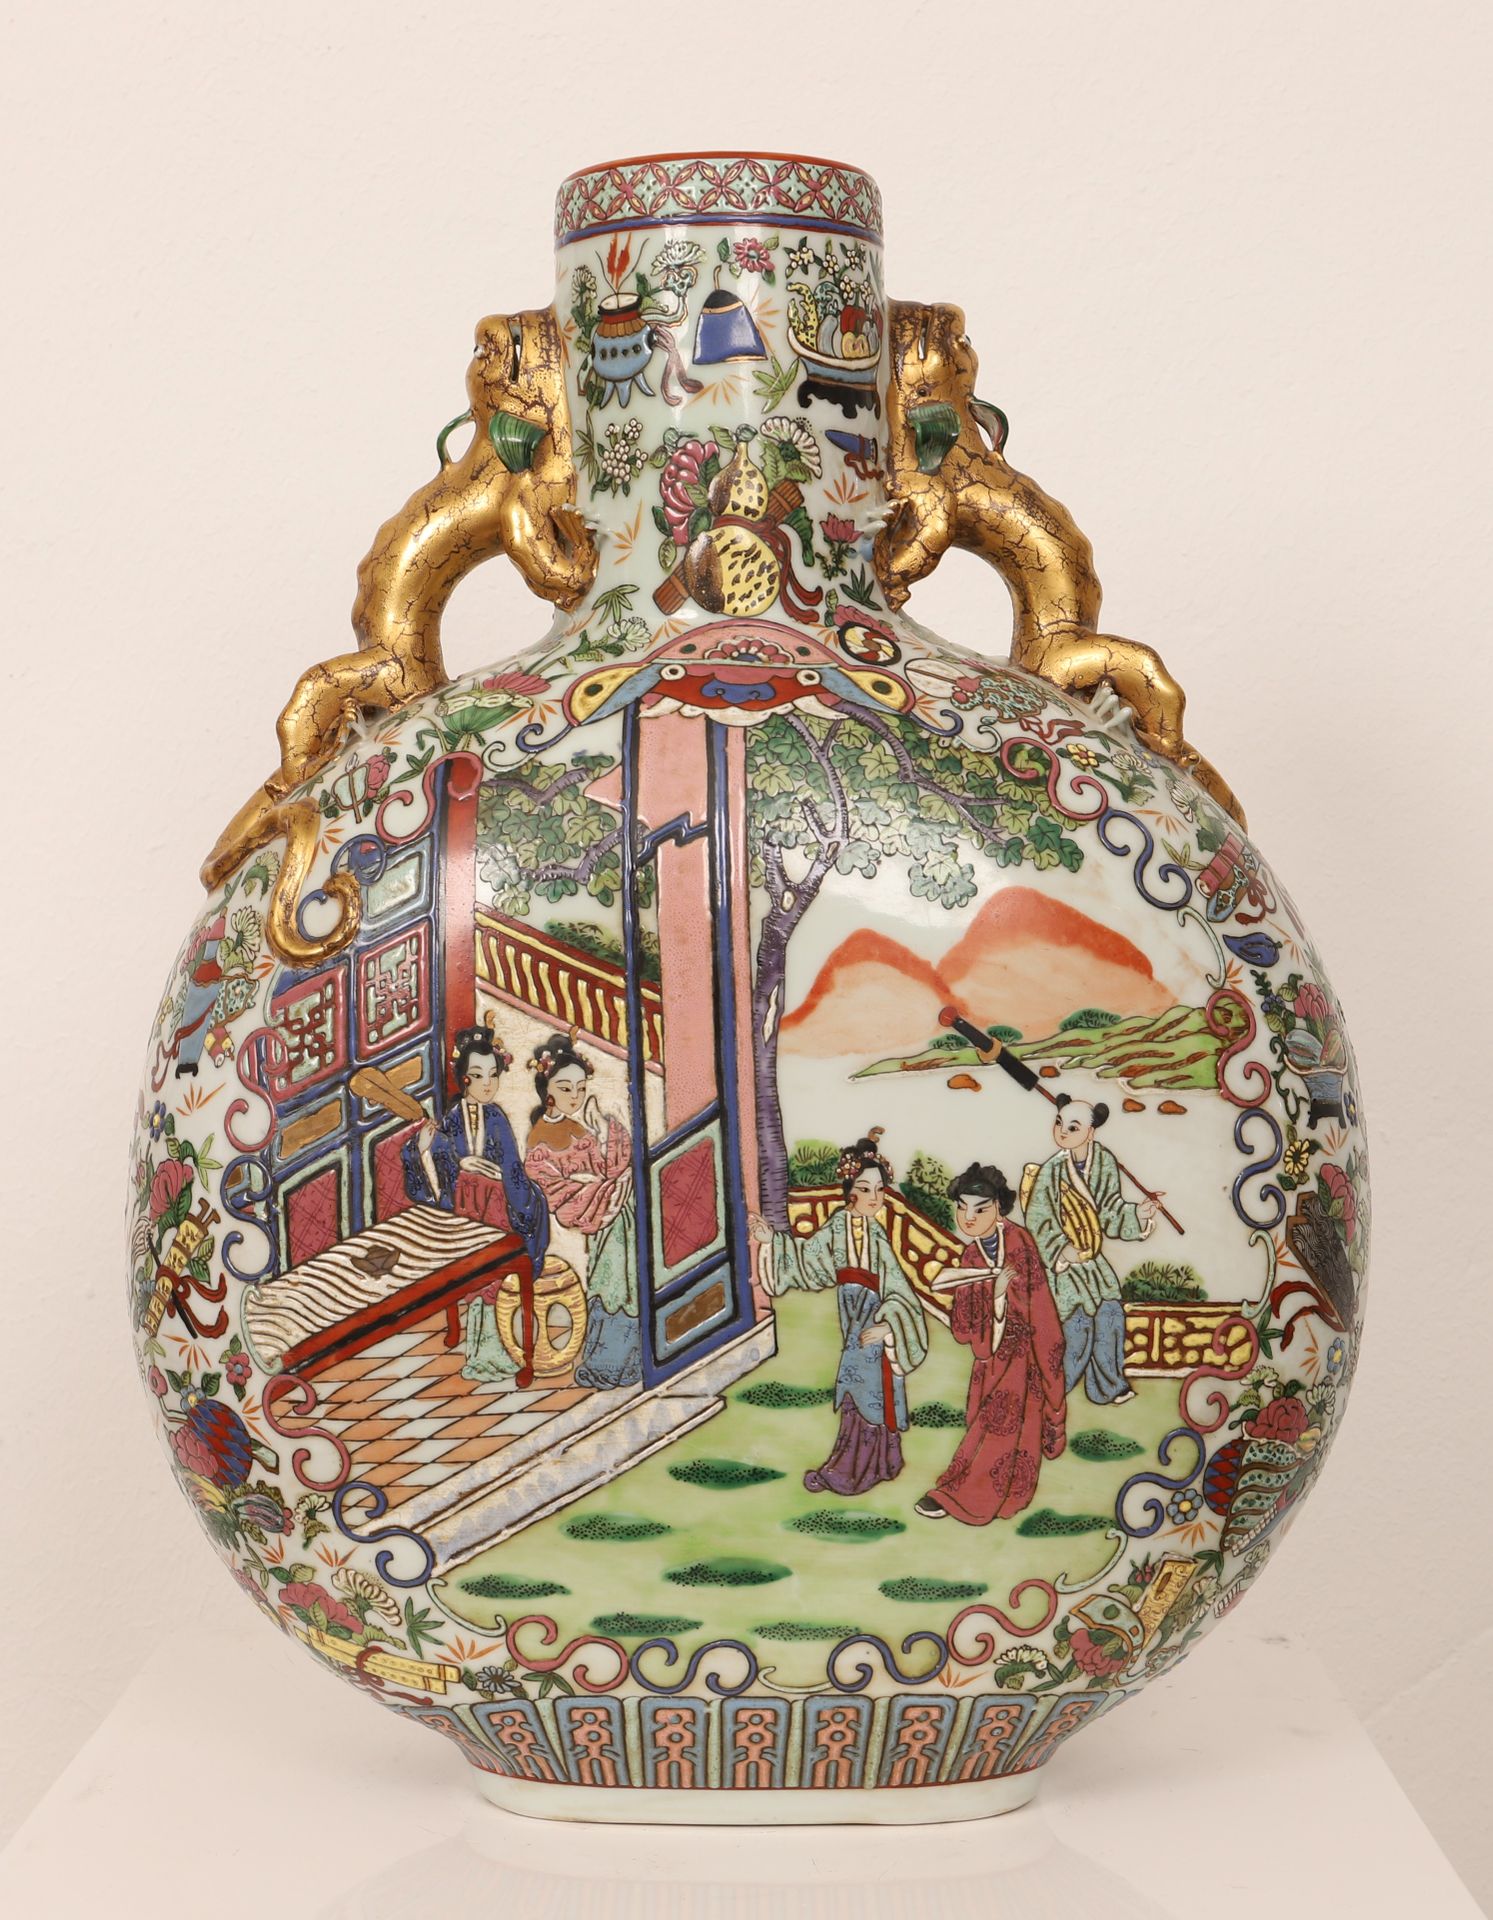 重要的中国乾隆口味花瓶(1736- 1795/96) 精美的瓷器葫芦造型，粉彩 